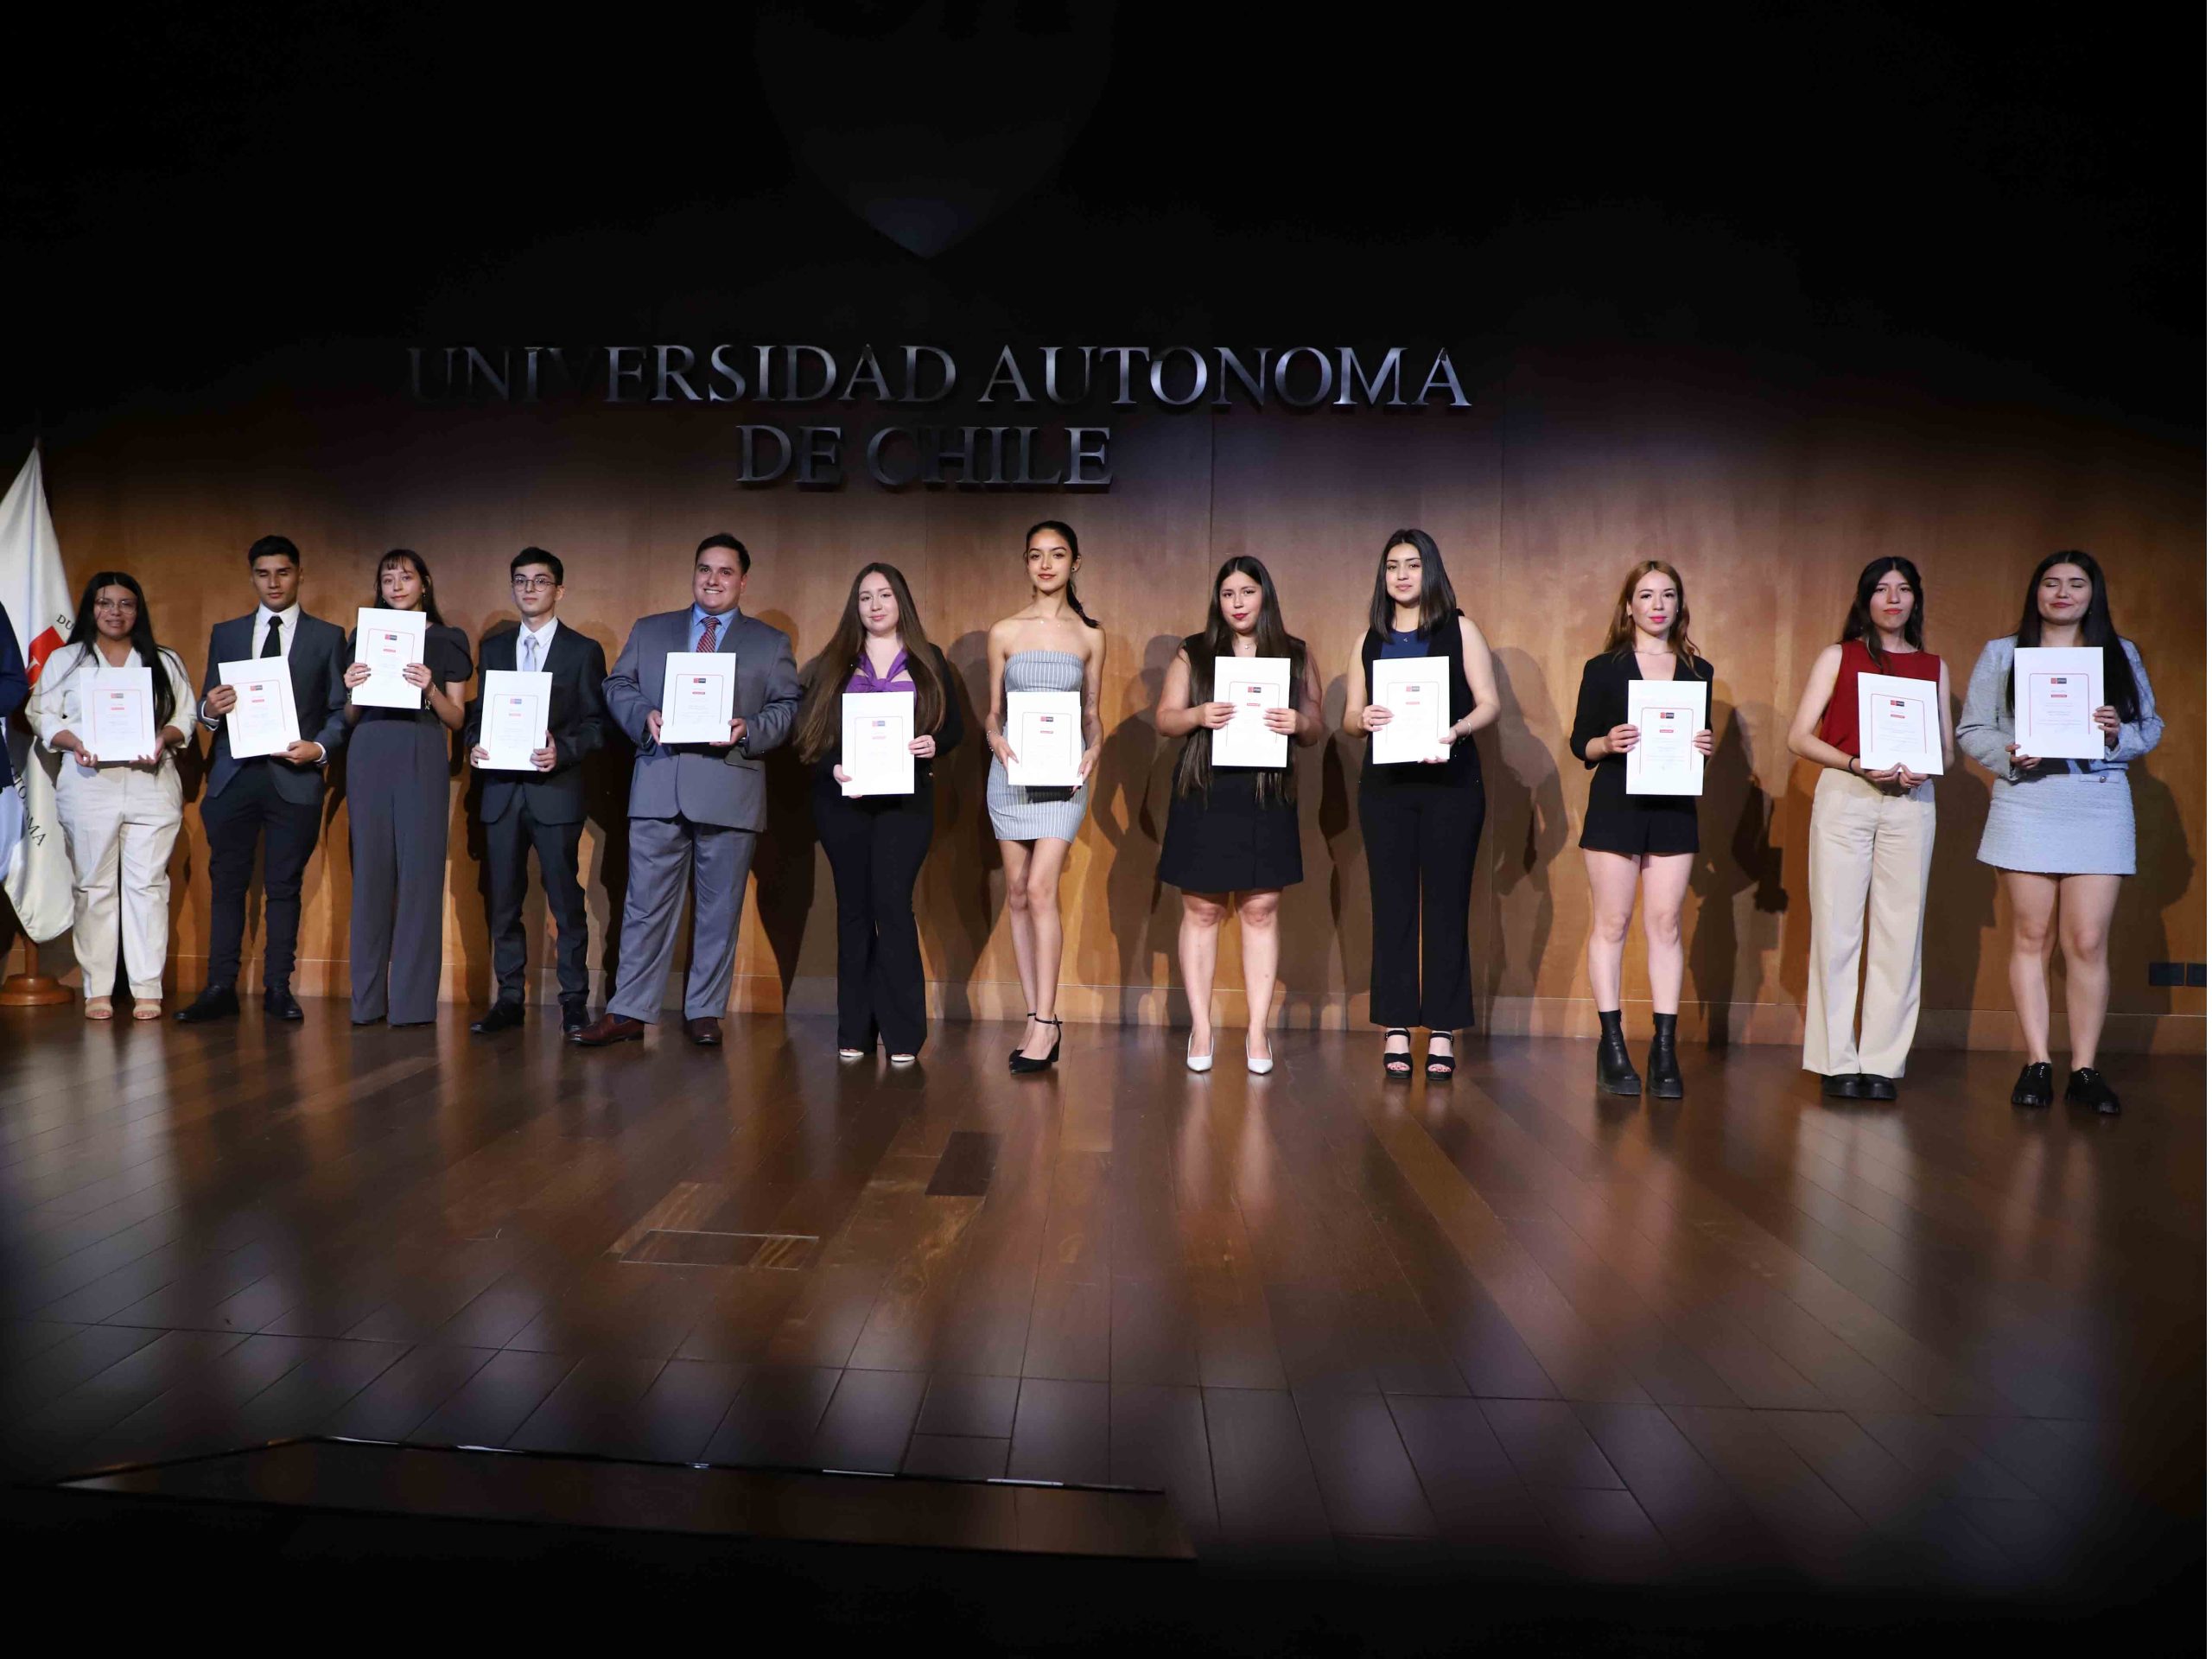 Estudiantes de tercer año de la Carrera de Derecho recibieron su certificado Ius Postulandi